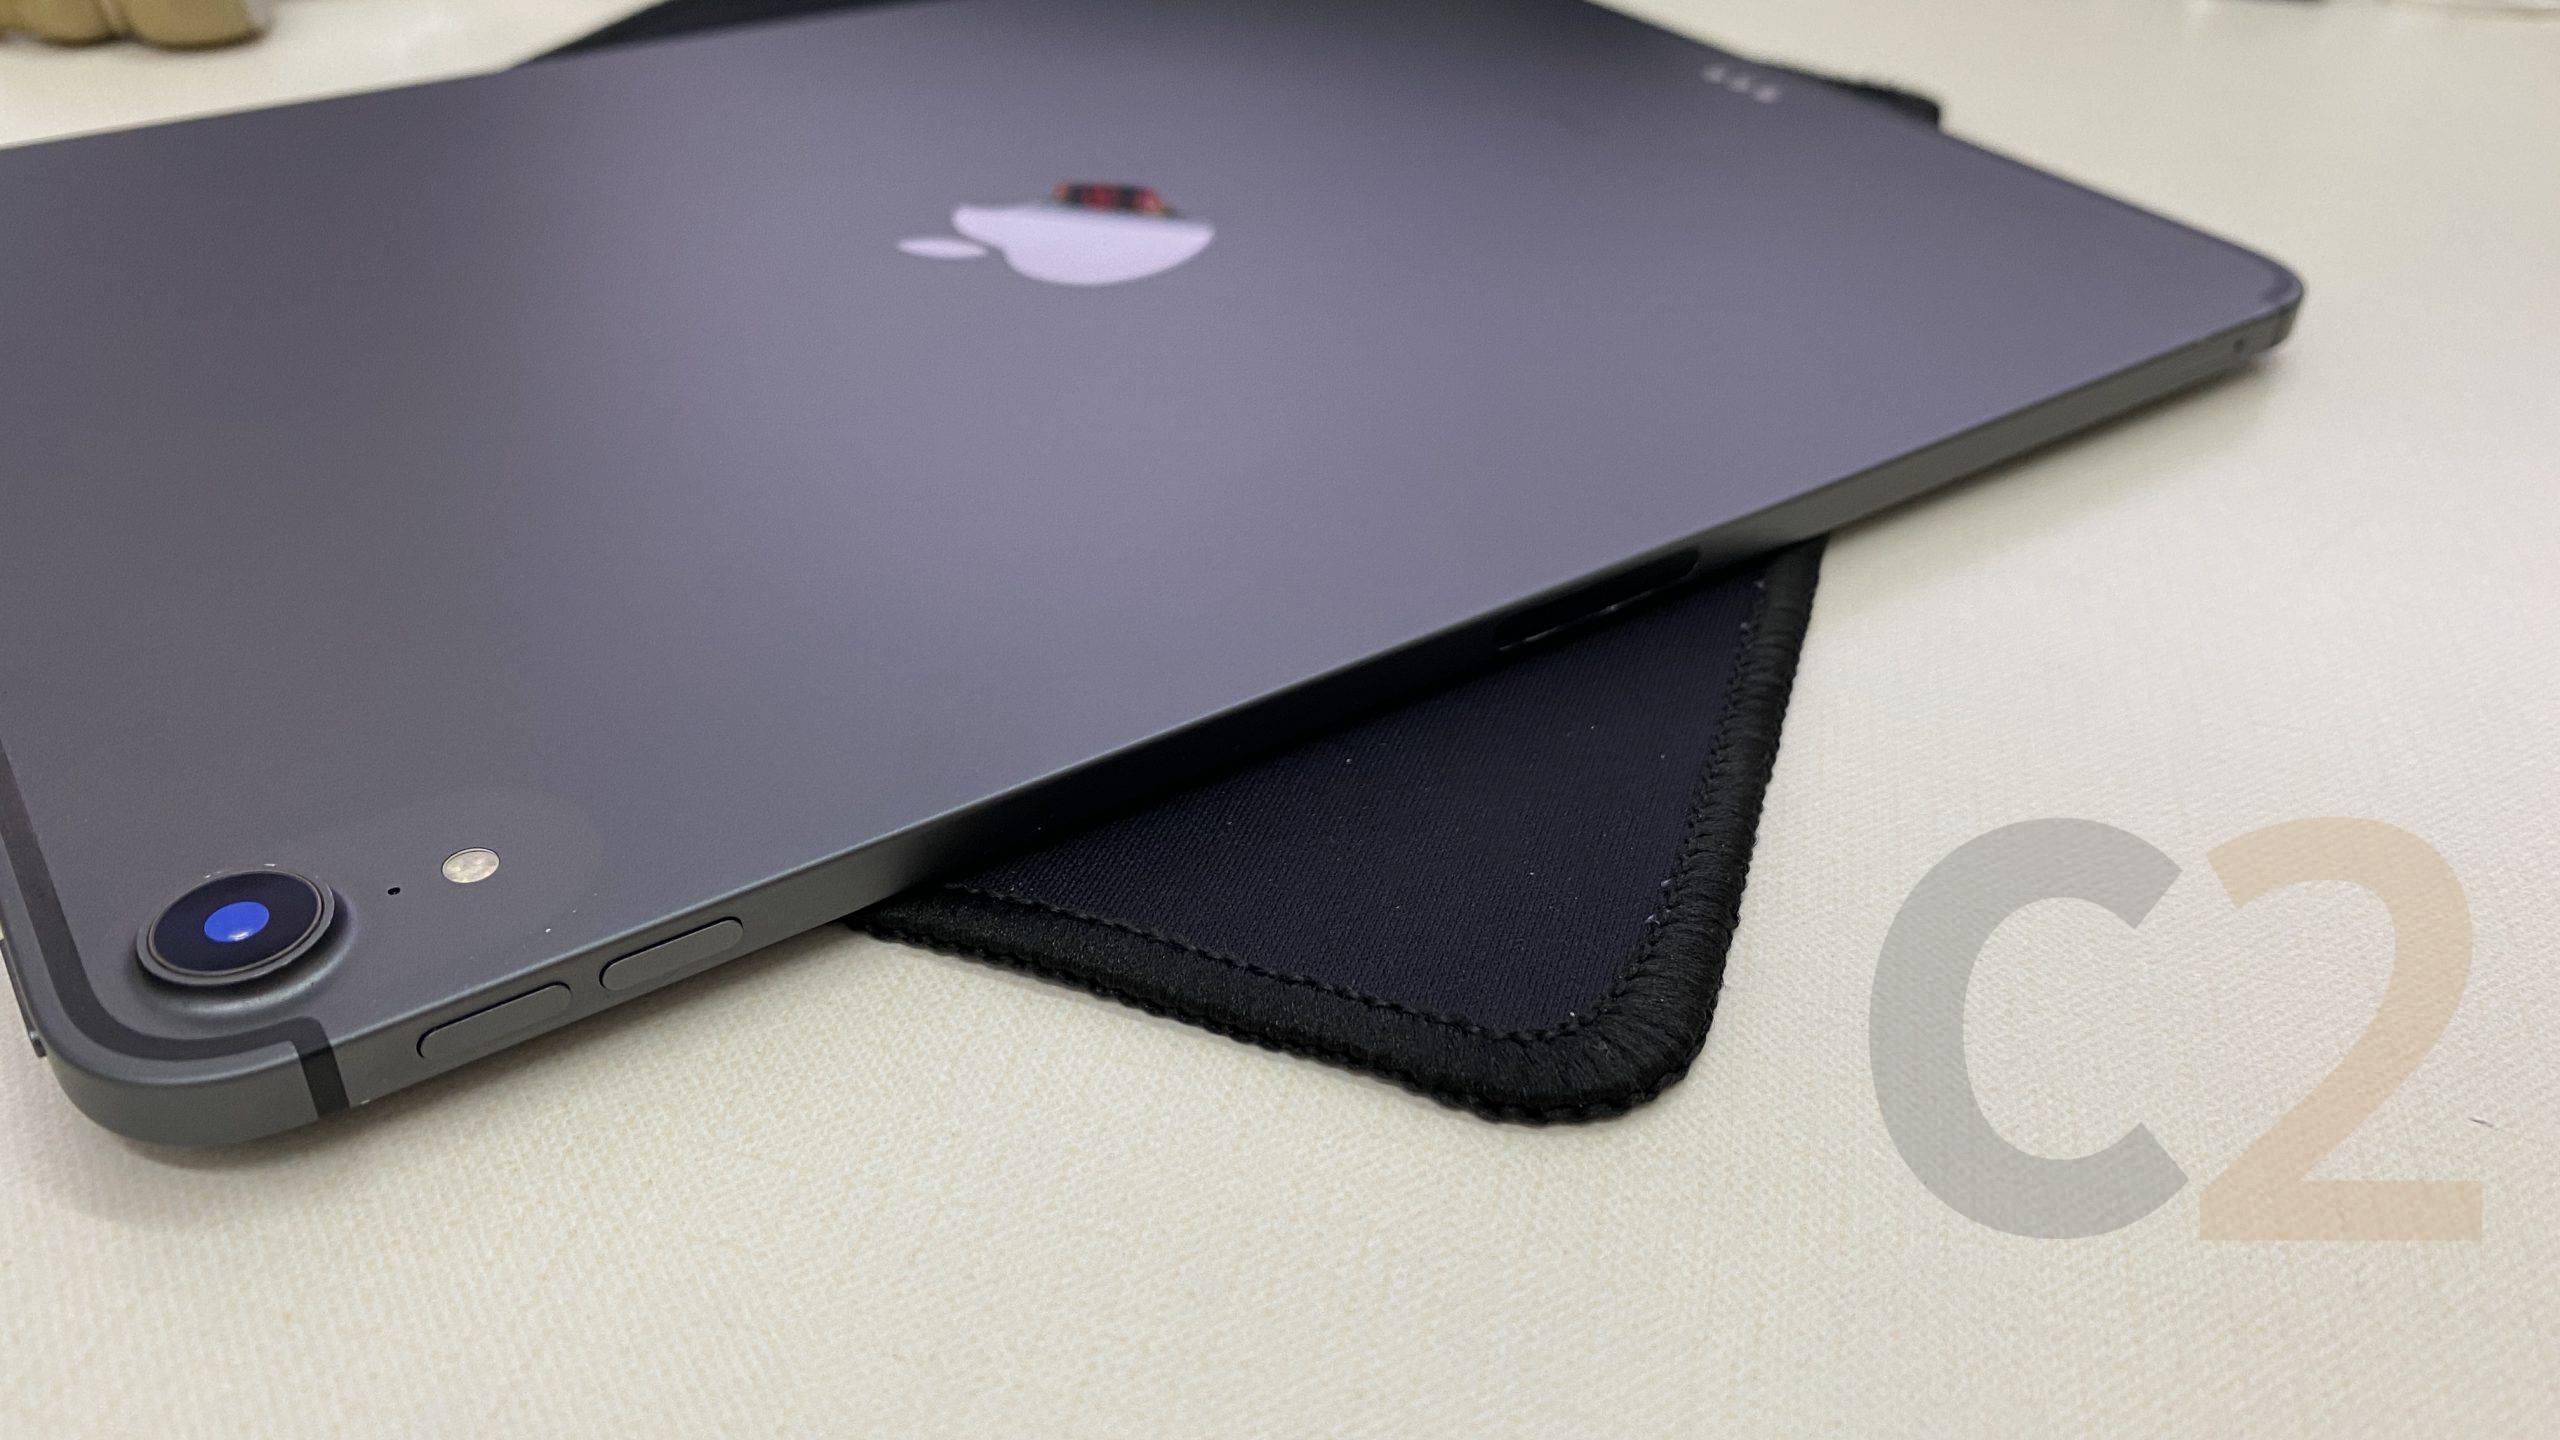 (特價一台) APPLE iPad Pro 3rd Gen 2018 11inch inch 256G LTE版 85-90% NEW (SPACE GRAY) - C2 Computer